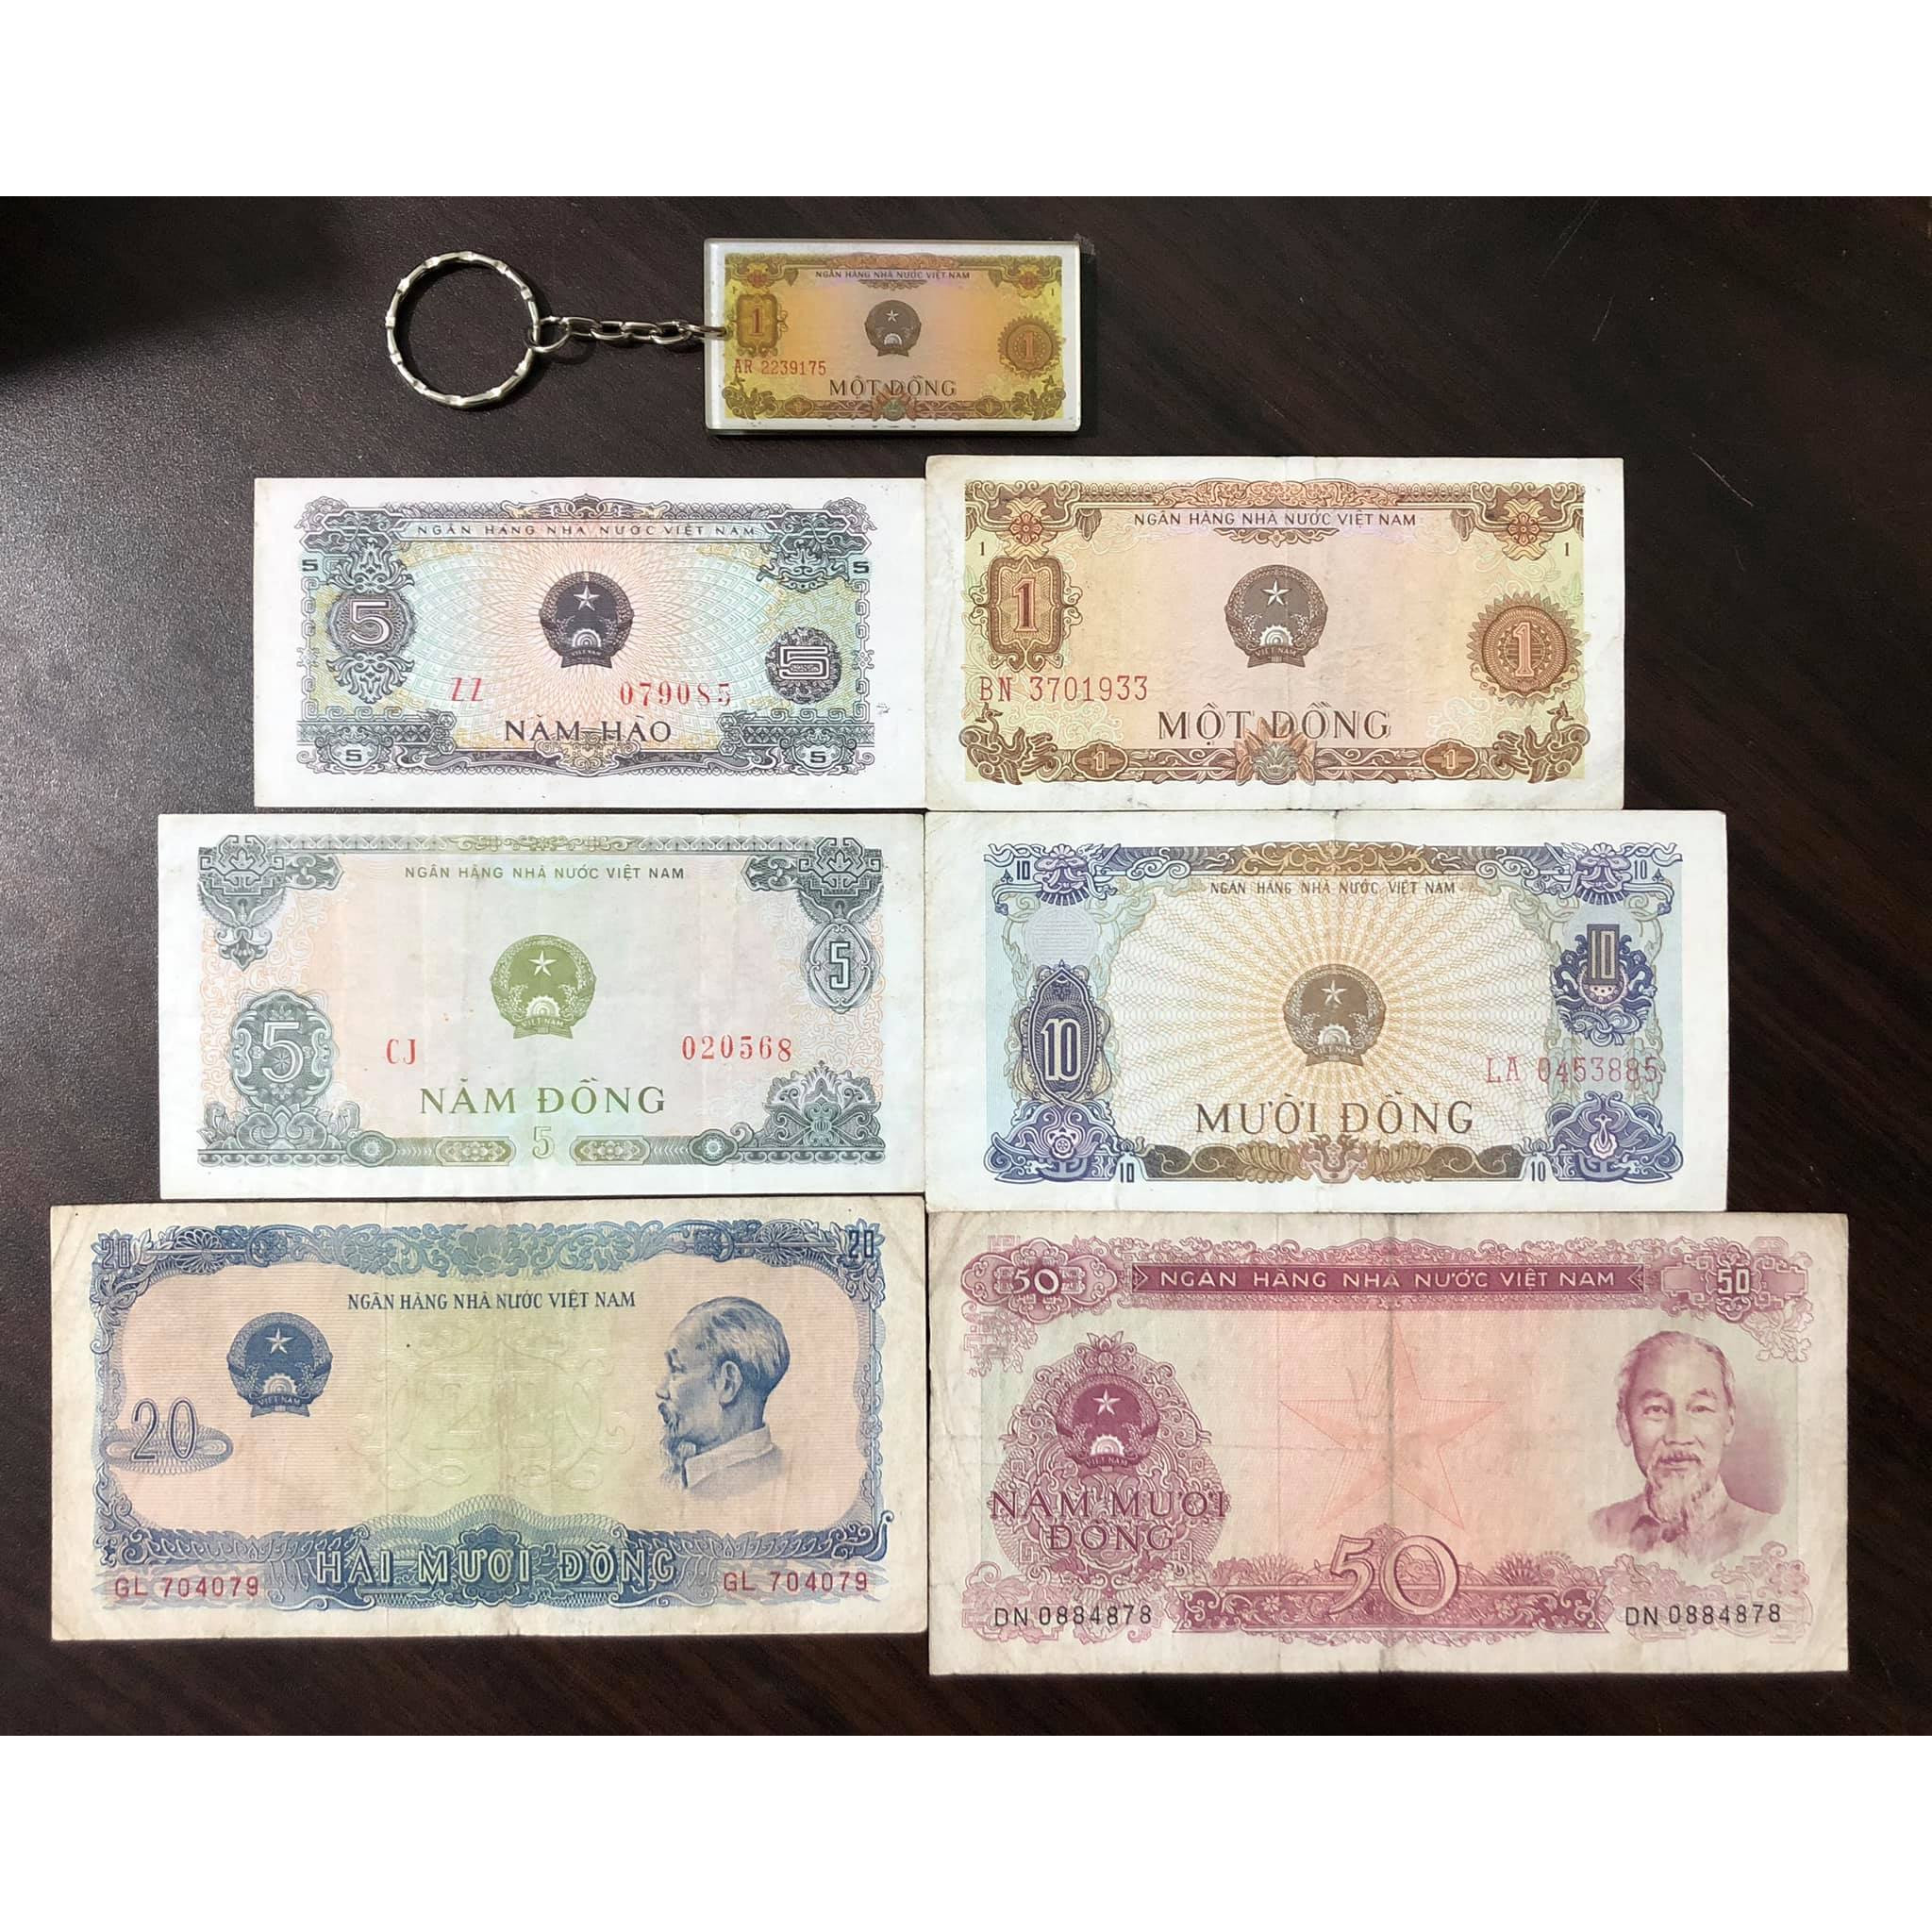 Tiền cổ Việt Nam, đủ bộ tiền 6 tờ bao cấp năm 1976 sưu tầm (tặng kèm móc khóa hình tiền xưa)